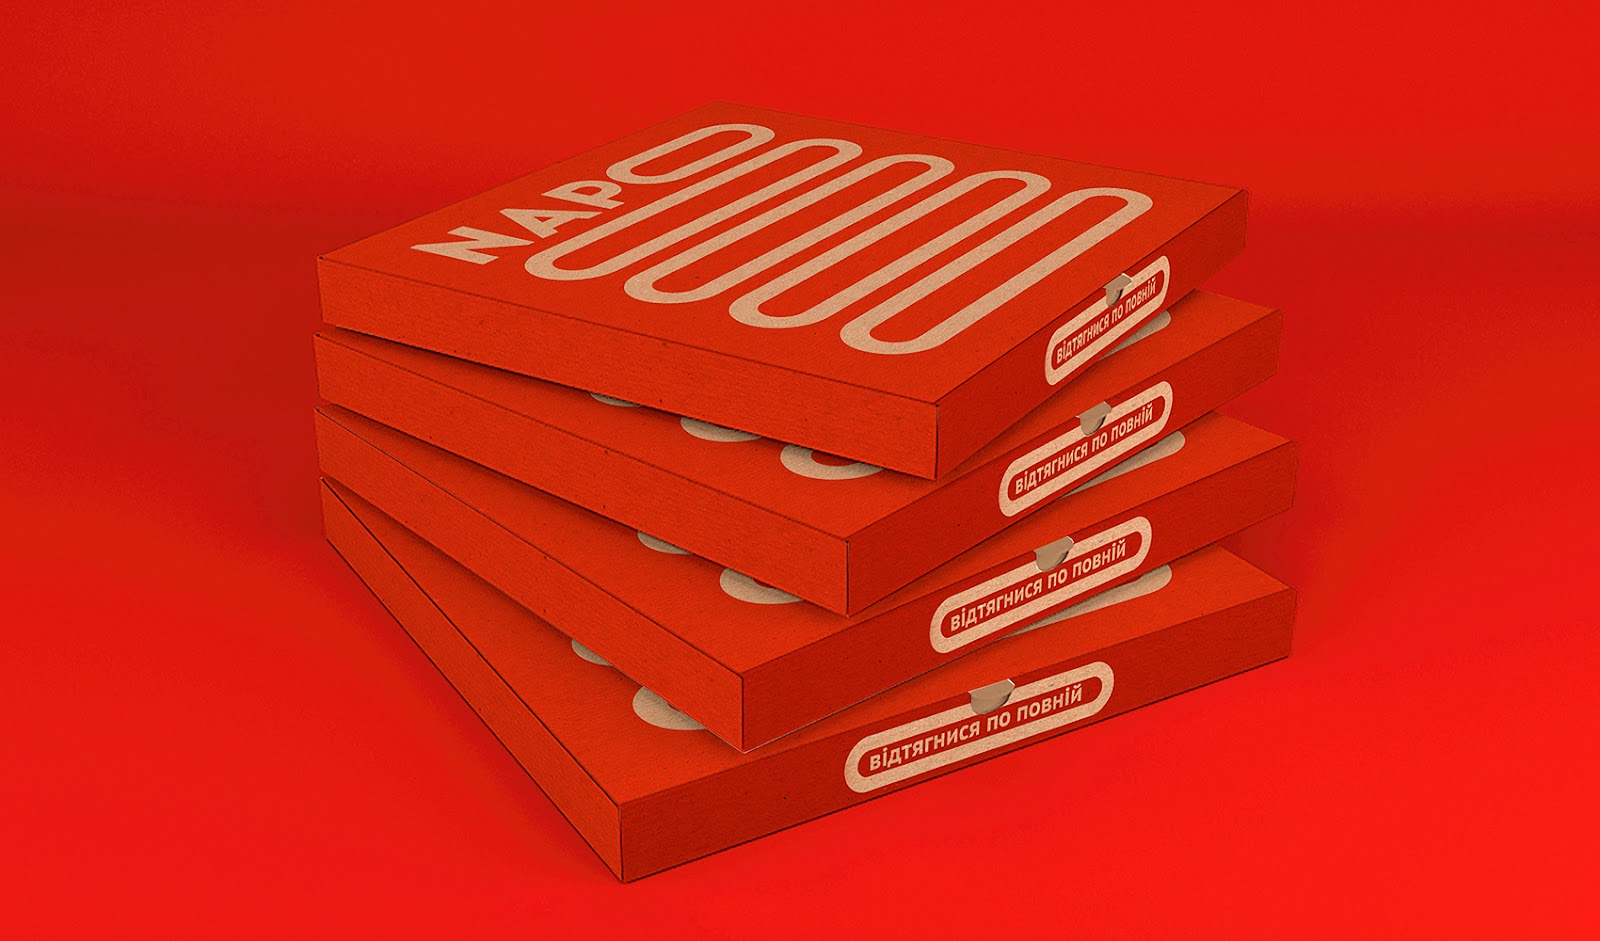 创意食品Napo披萨包装设计作品欣赏。